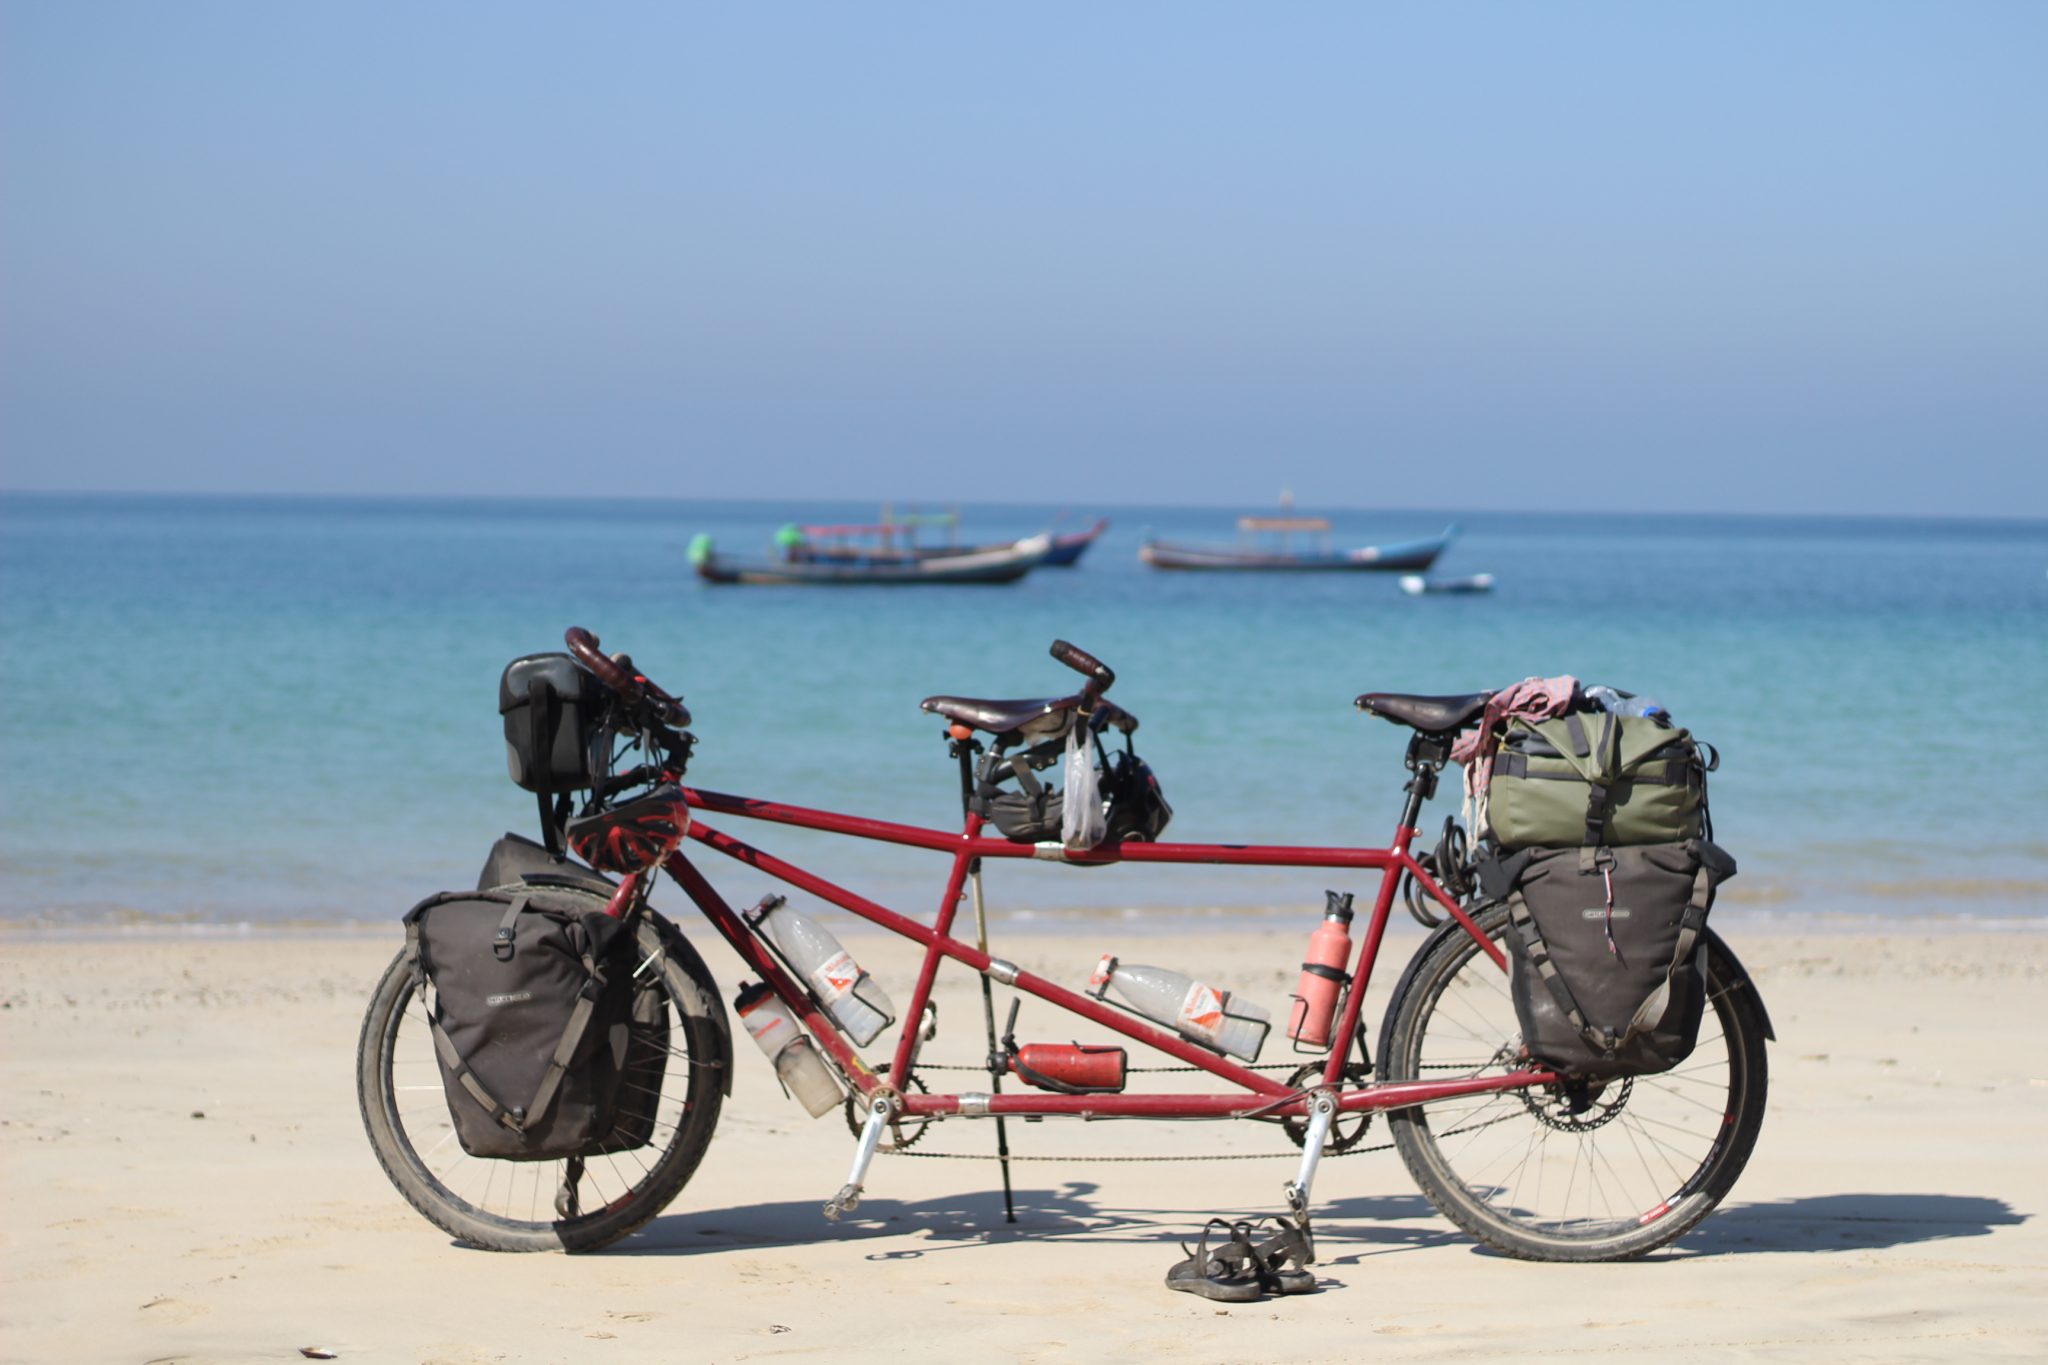 En vélo tandem autour du monde, ici au Myanmar face au golfe du Bengale.